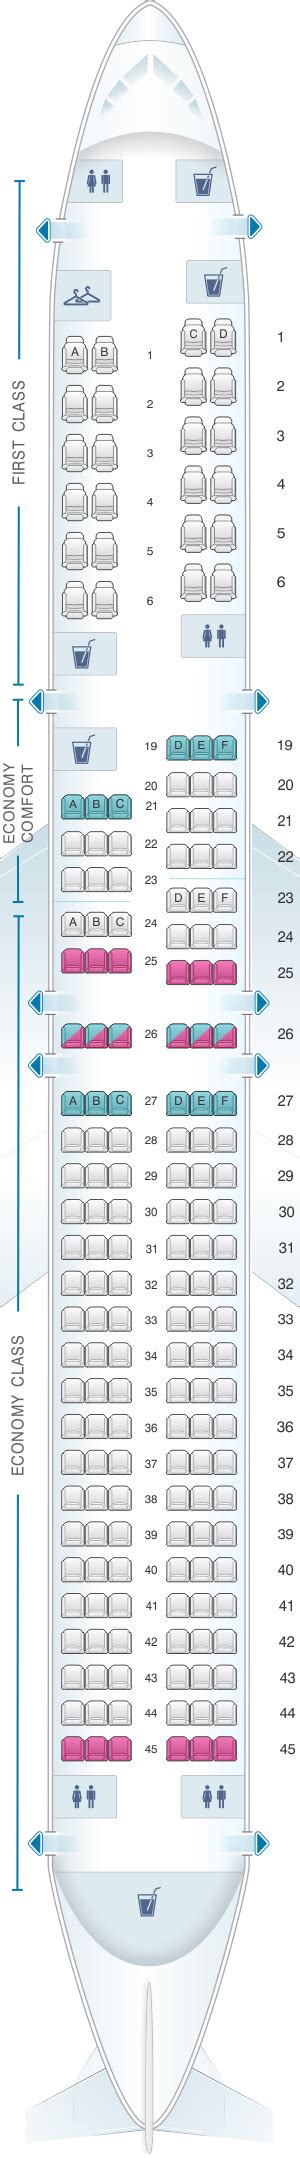 Boeing 757 200 Delta Seat Map 711